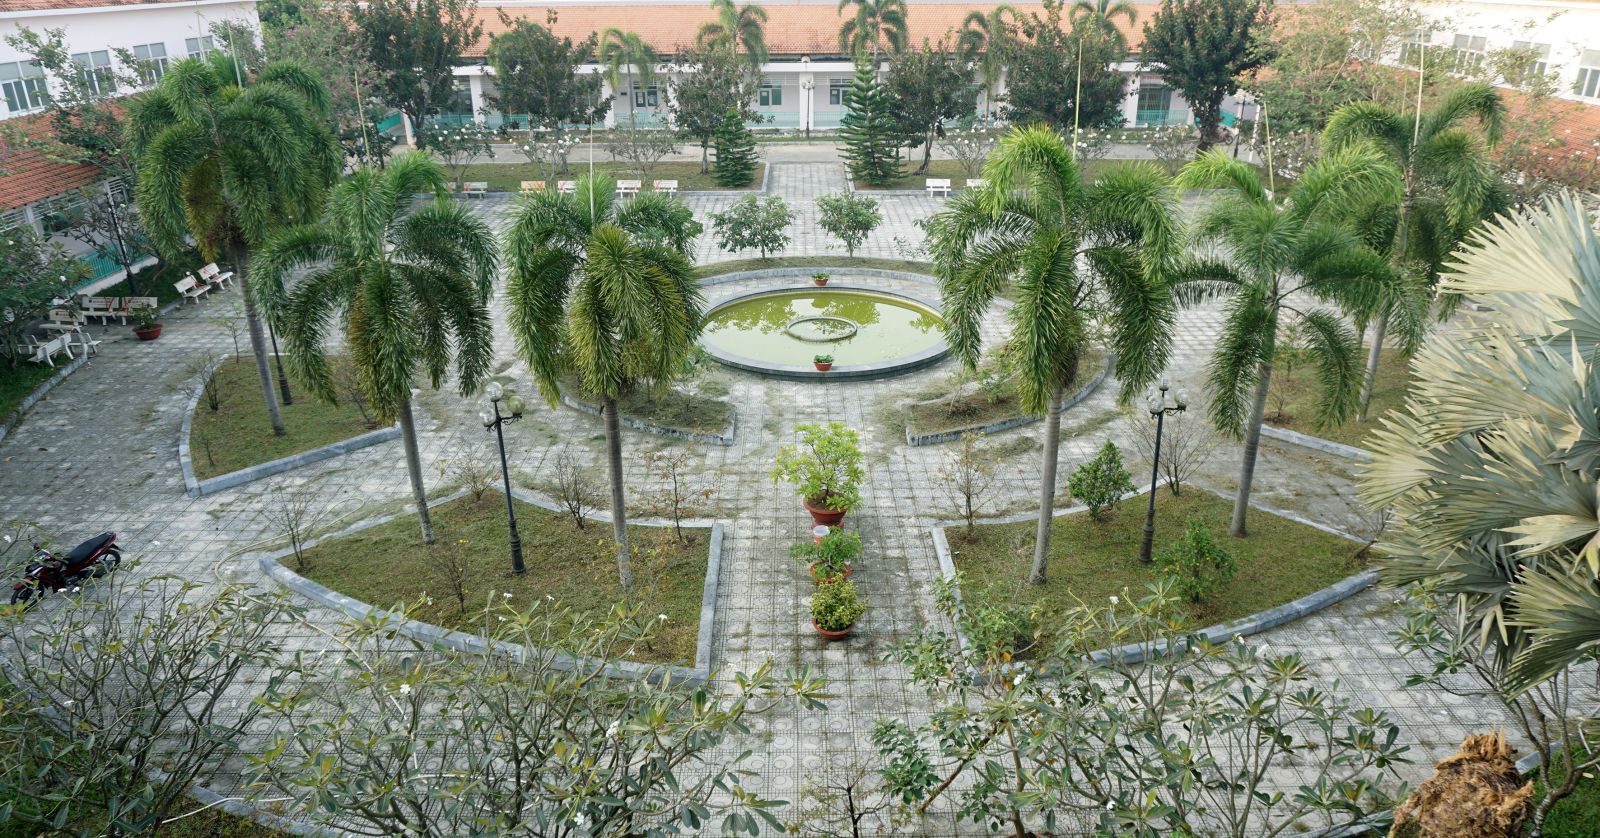 Bệnh viện Tâm thần Long An được trồng rất nhiều cây xanh như một công viên thu nhỏ, tạo sự thư giãn tinh thần cho các bệnh nhân